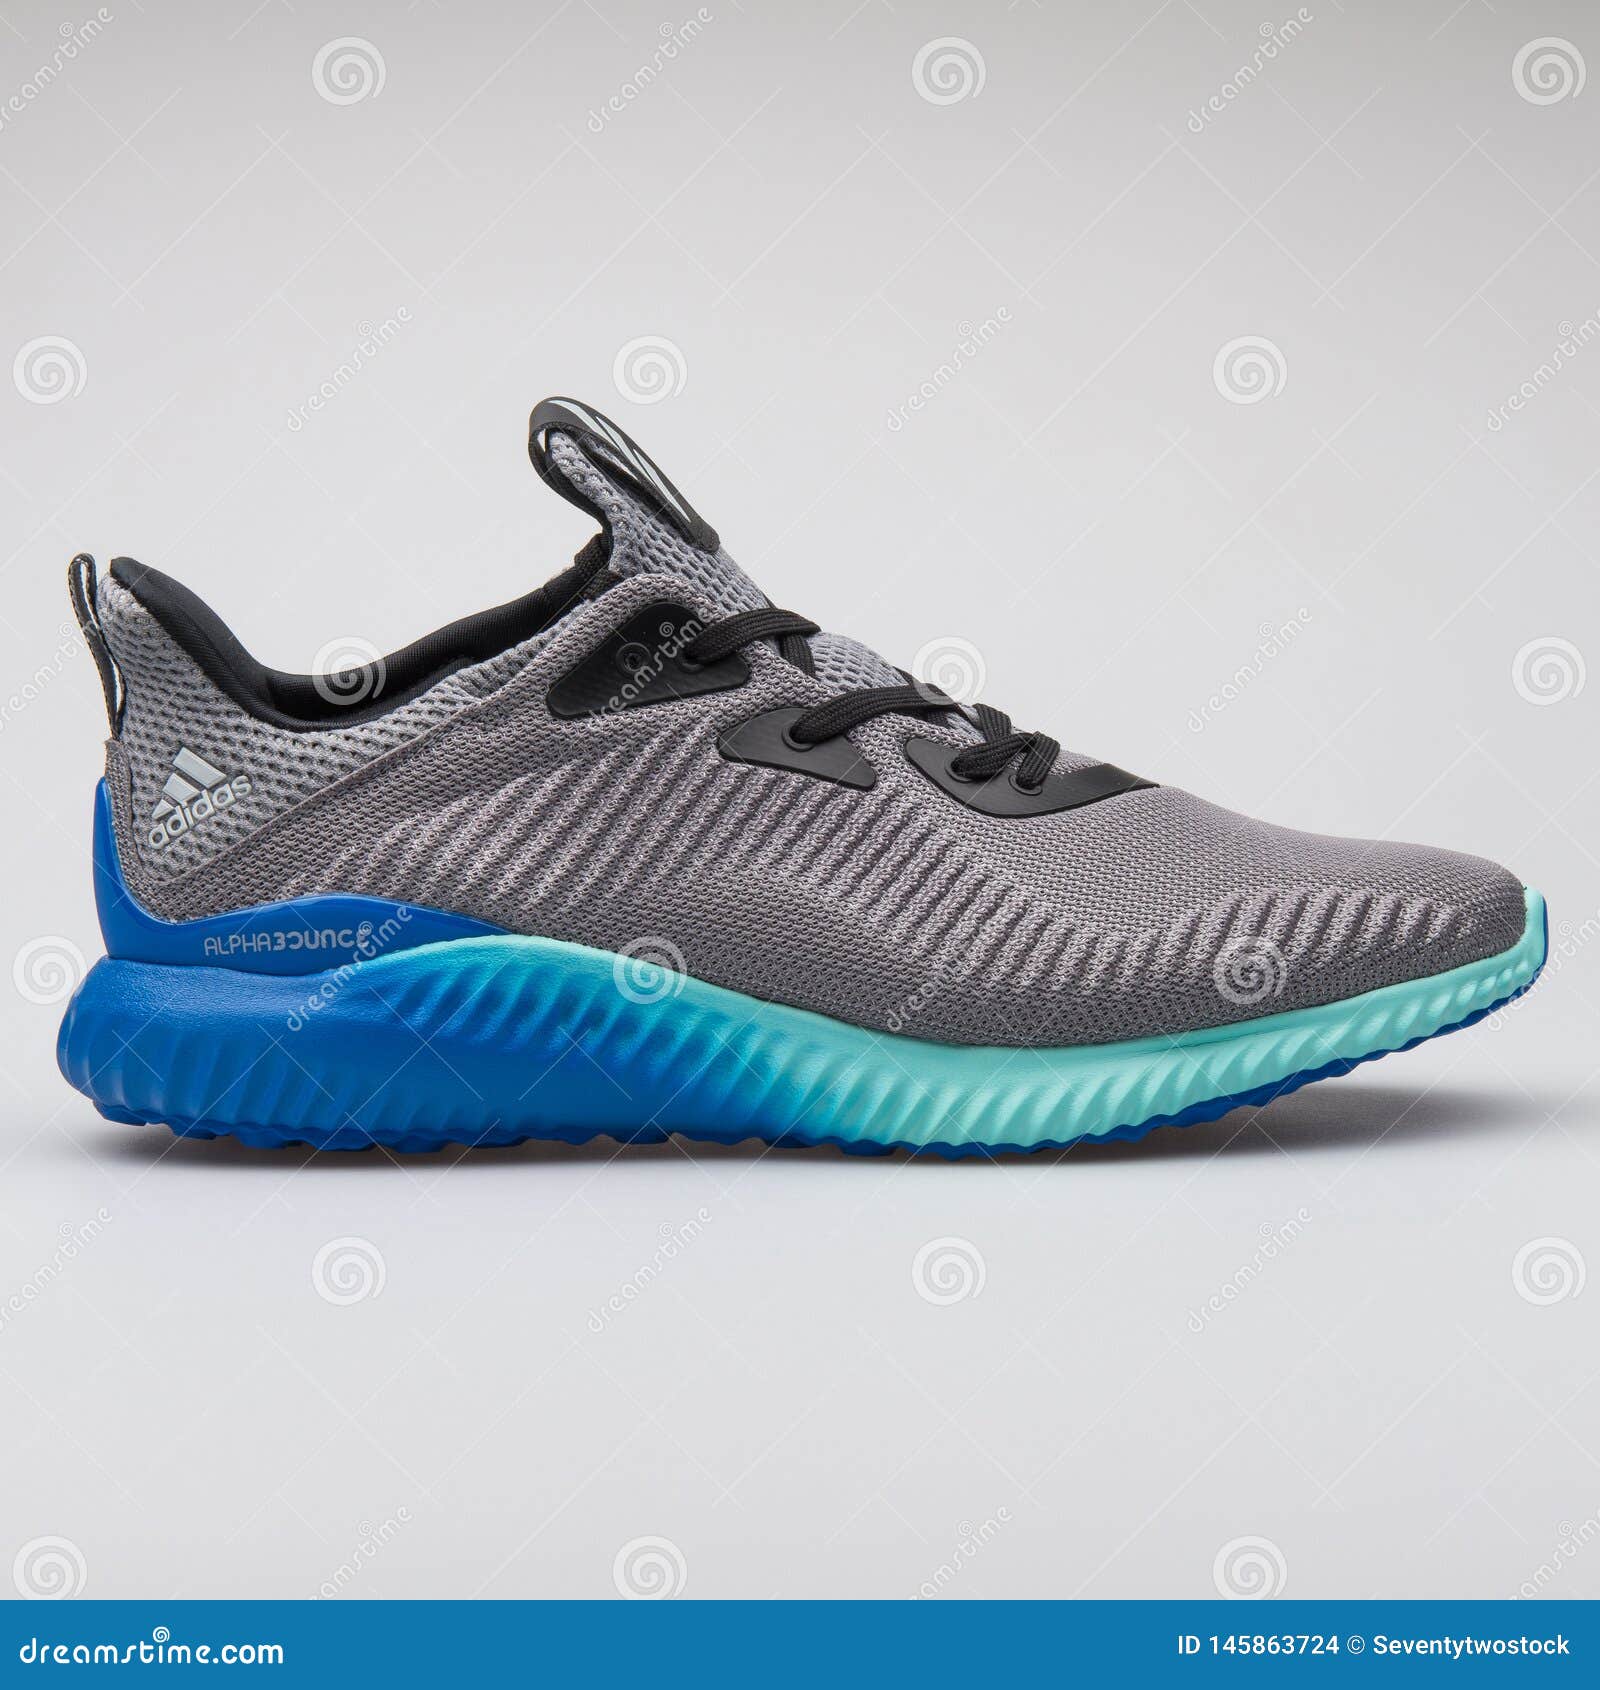 Adidas Alphabounce Zapatilla De Deporte Gris Y Azul De 1 de archivo editorial - Imagen de calzado, deportes: 145863724